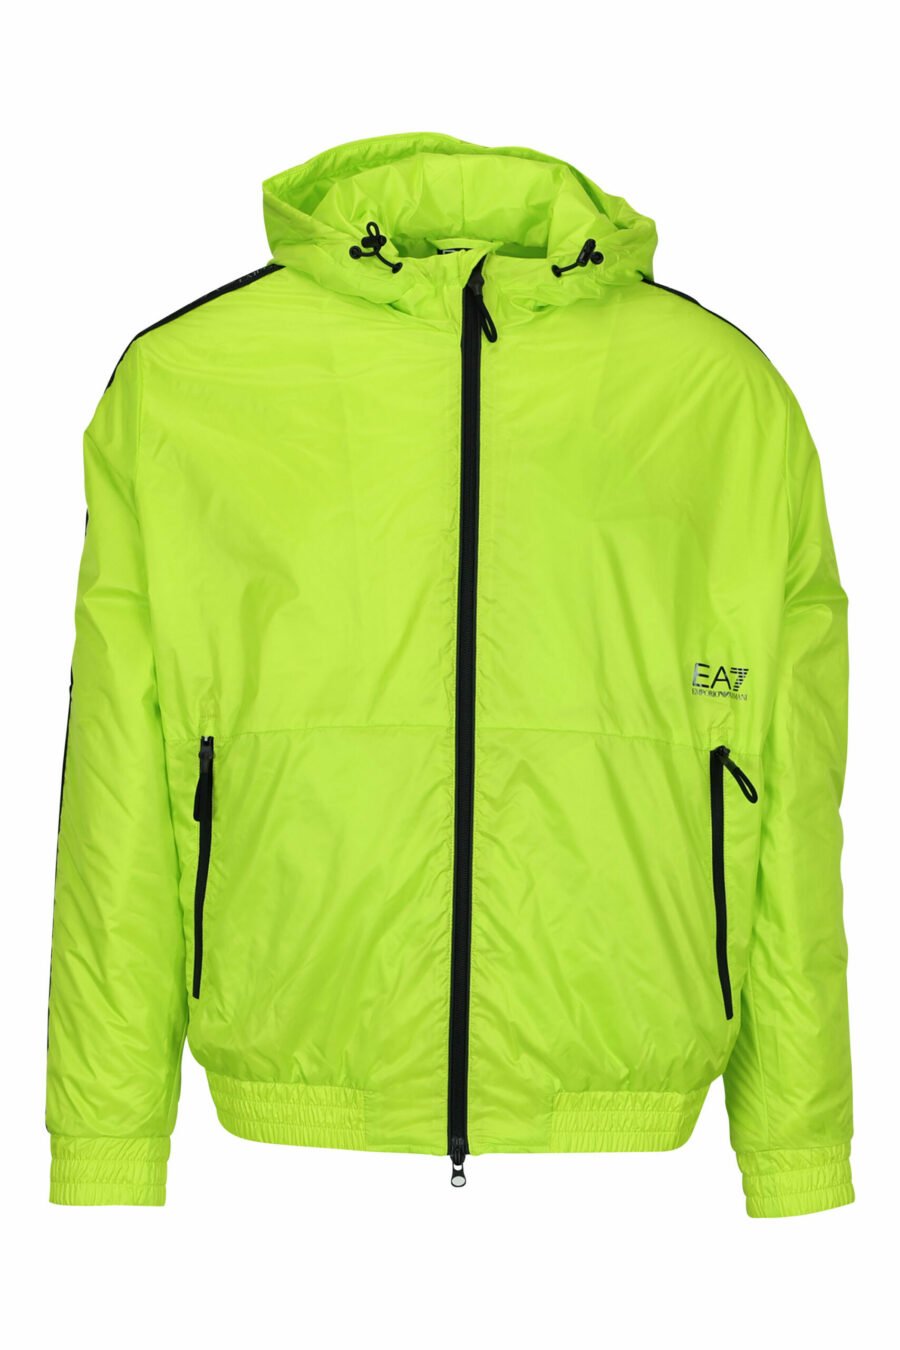 Wasserdichte lindgrüne Jacke mit Kapuze, weißen Seitenlinien und "lux identity"-Logo - 8057970709060 skaliert